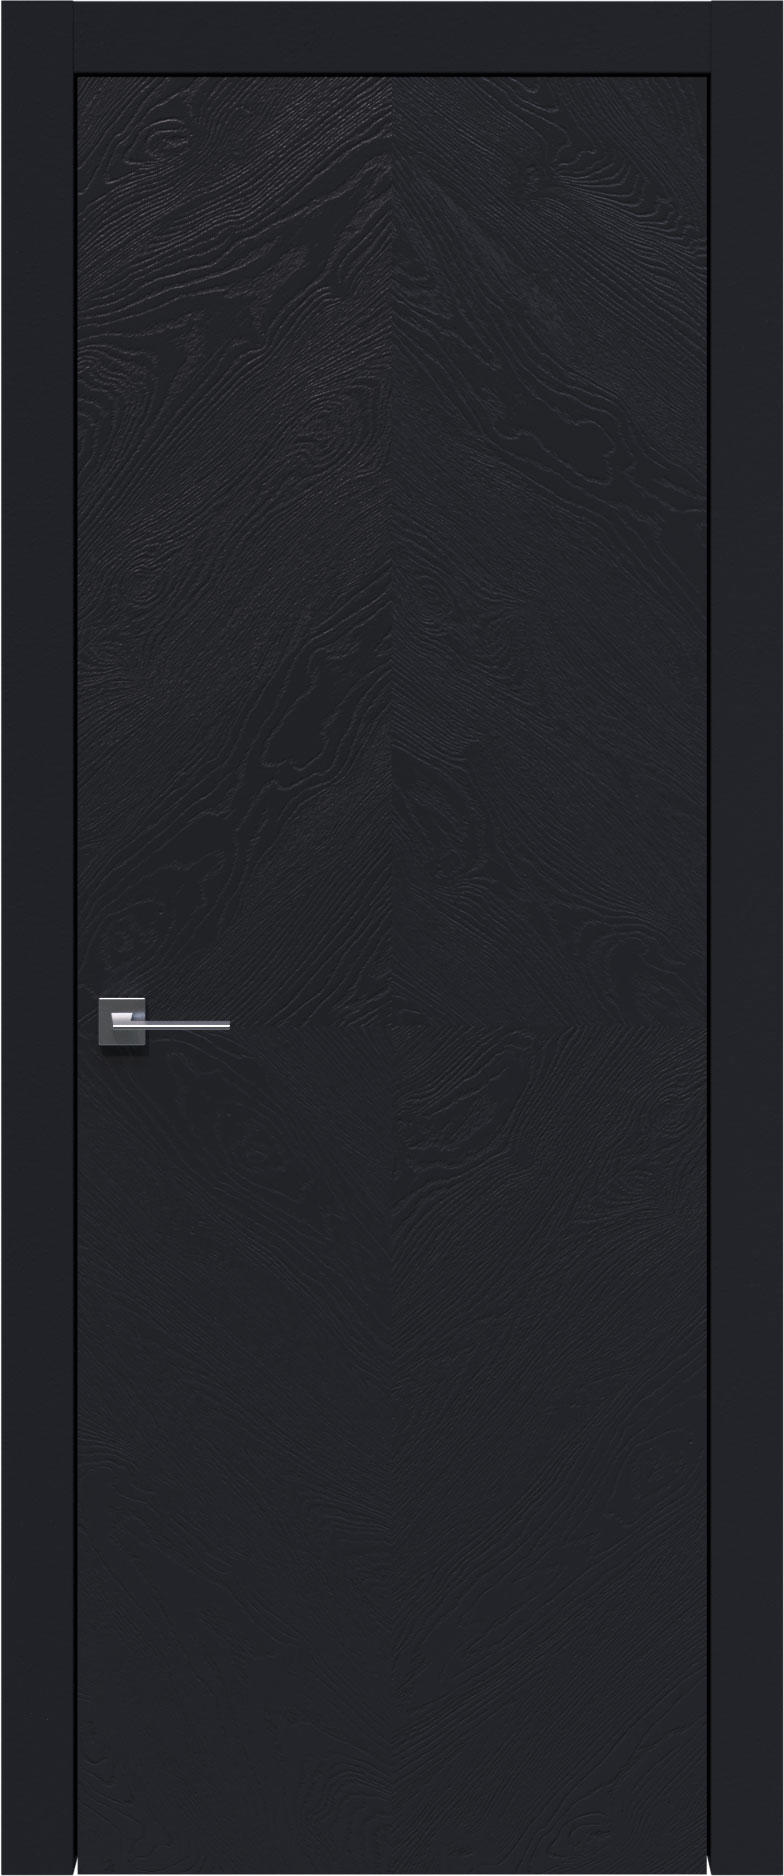 Tivoli К-1 цвет - Черная эмаль по шпону (RAL 9004) Без стекла (ДГ)